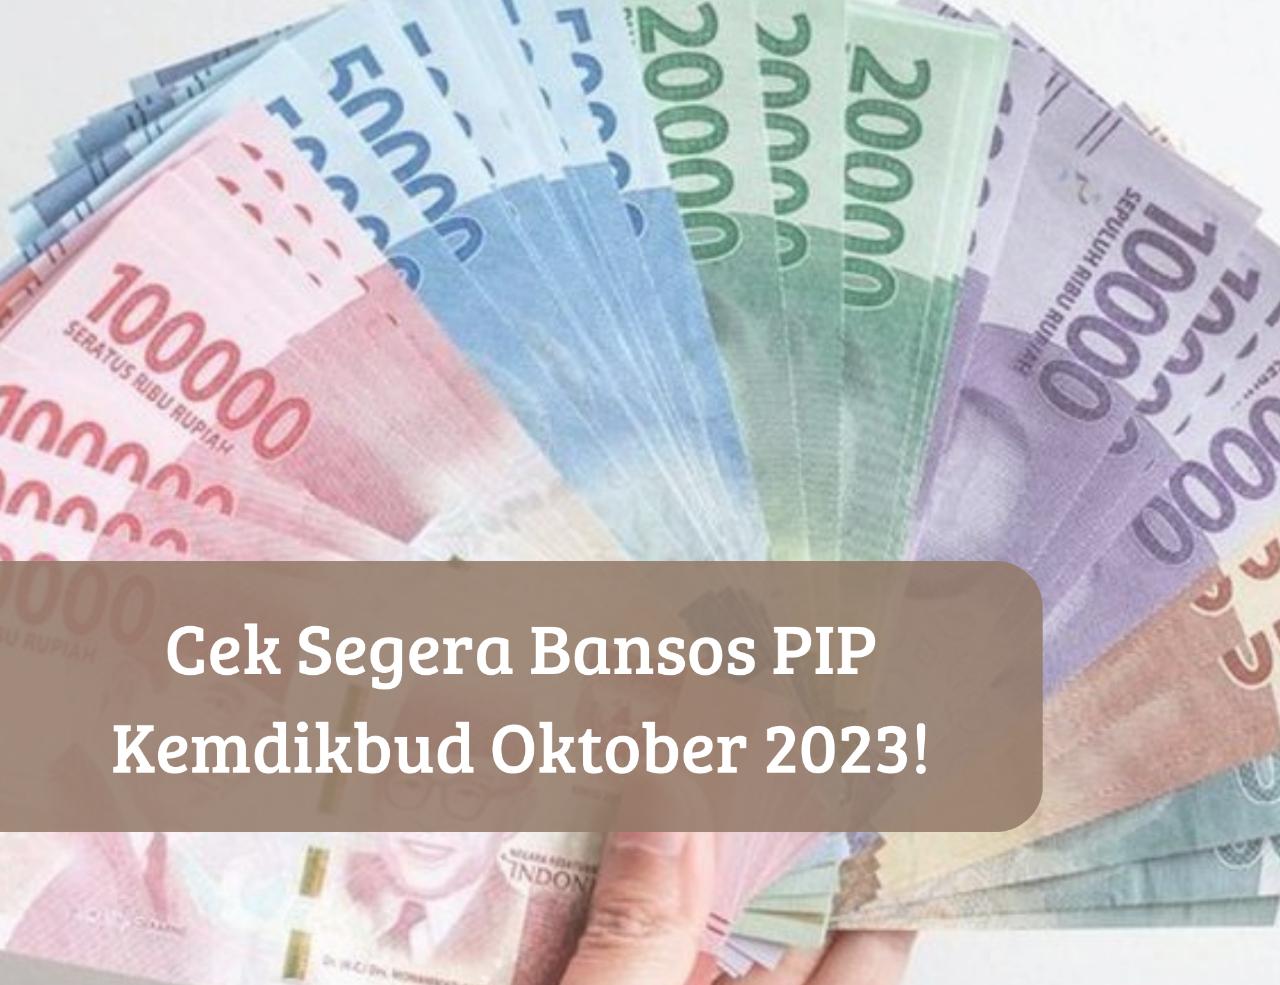 Sudah Cek Rekening? Bansos PIP Kemdikbud 2023 Cair Oktober, Penerima Dapat Uang Gratis hingga Rp1 Juta